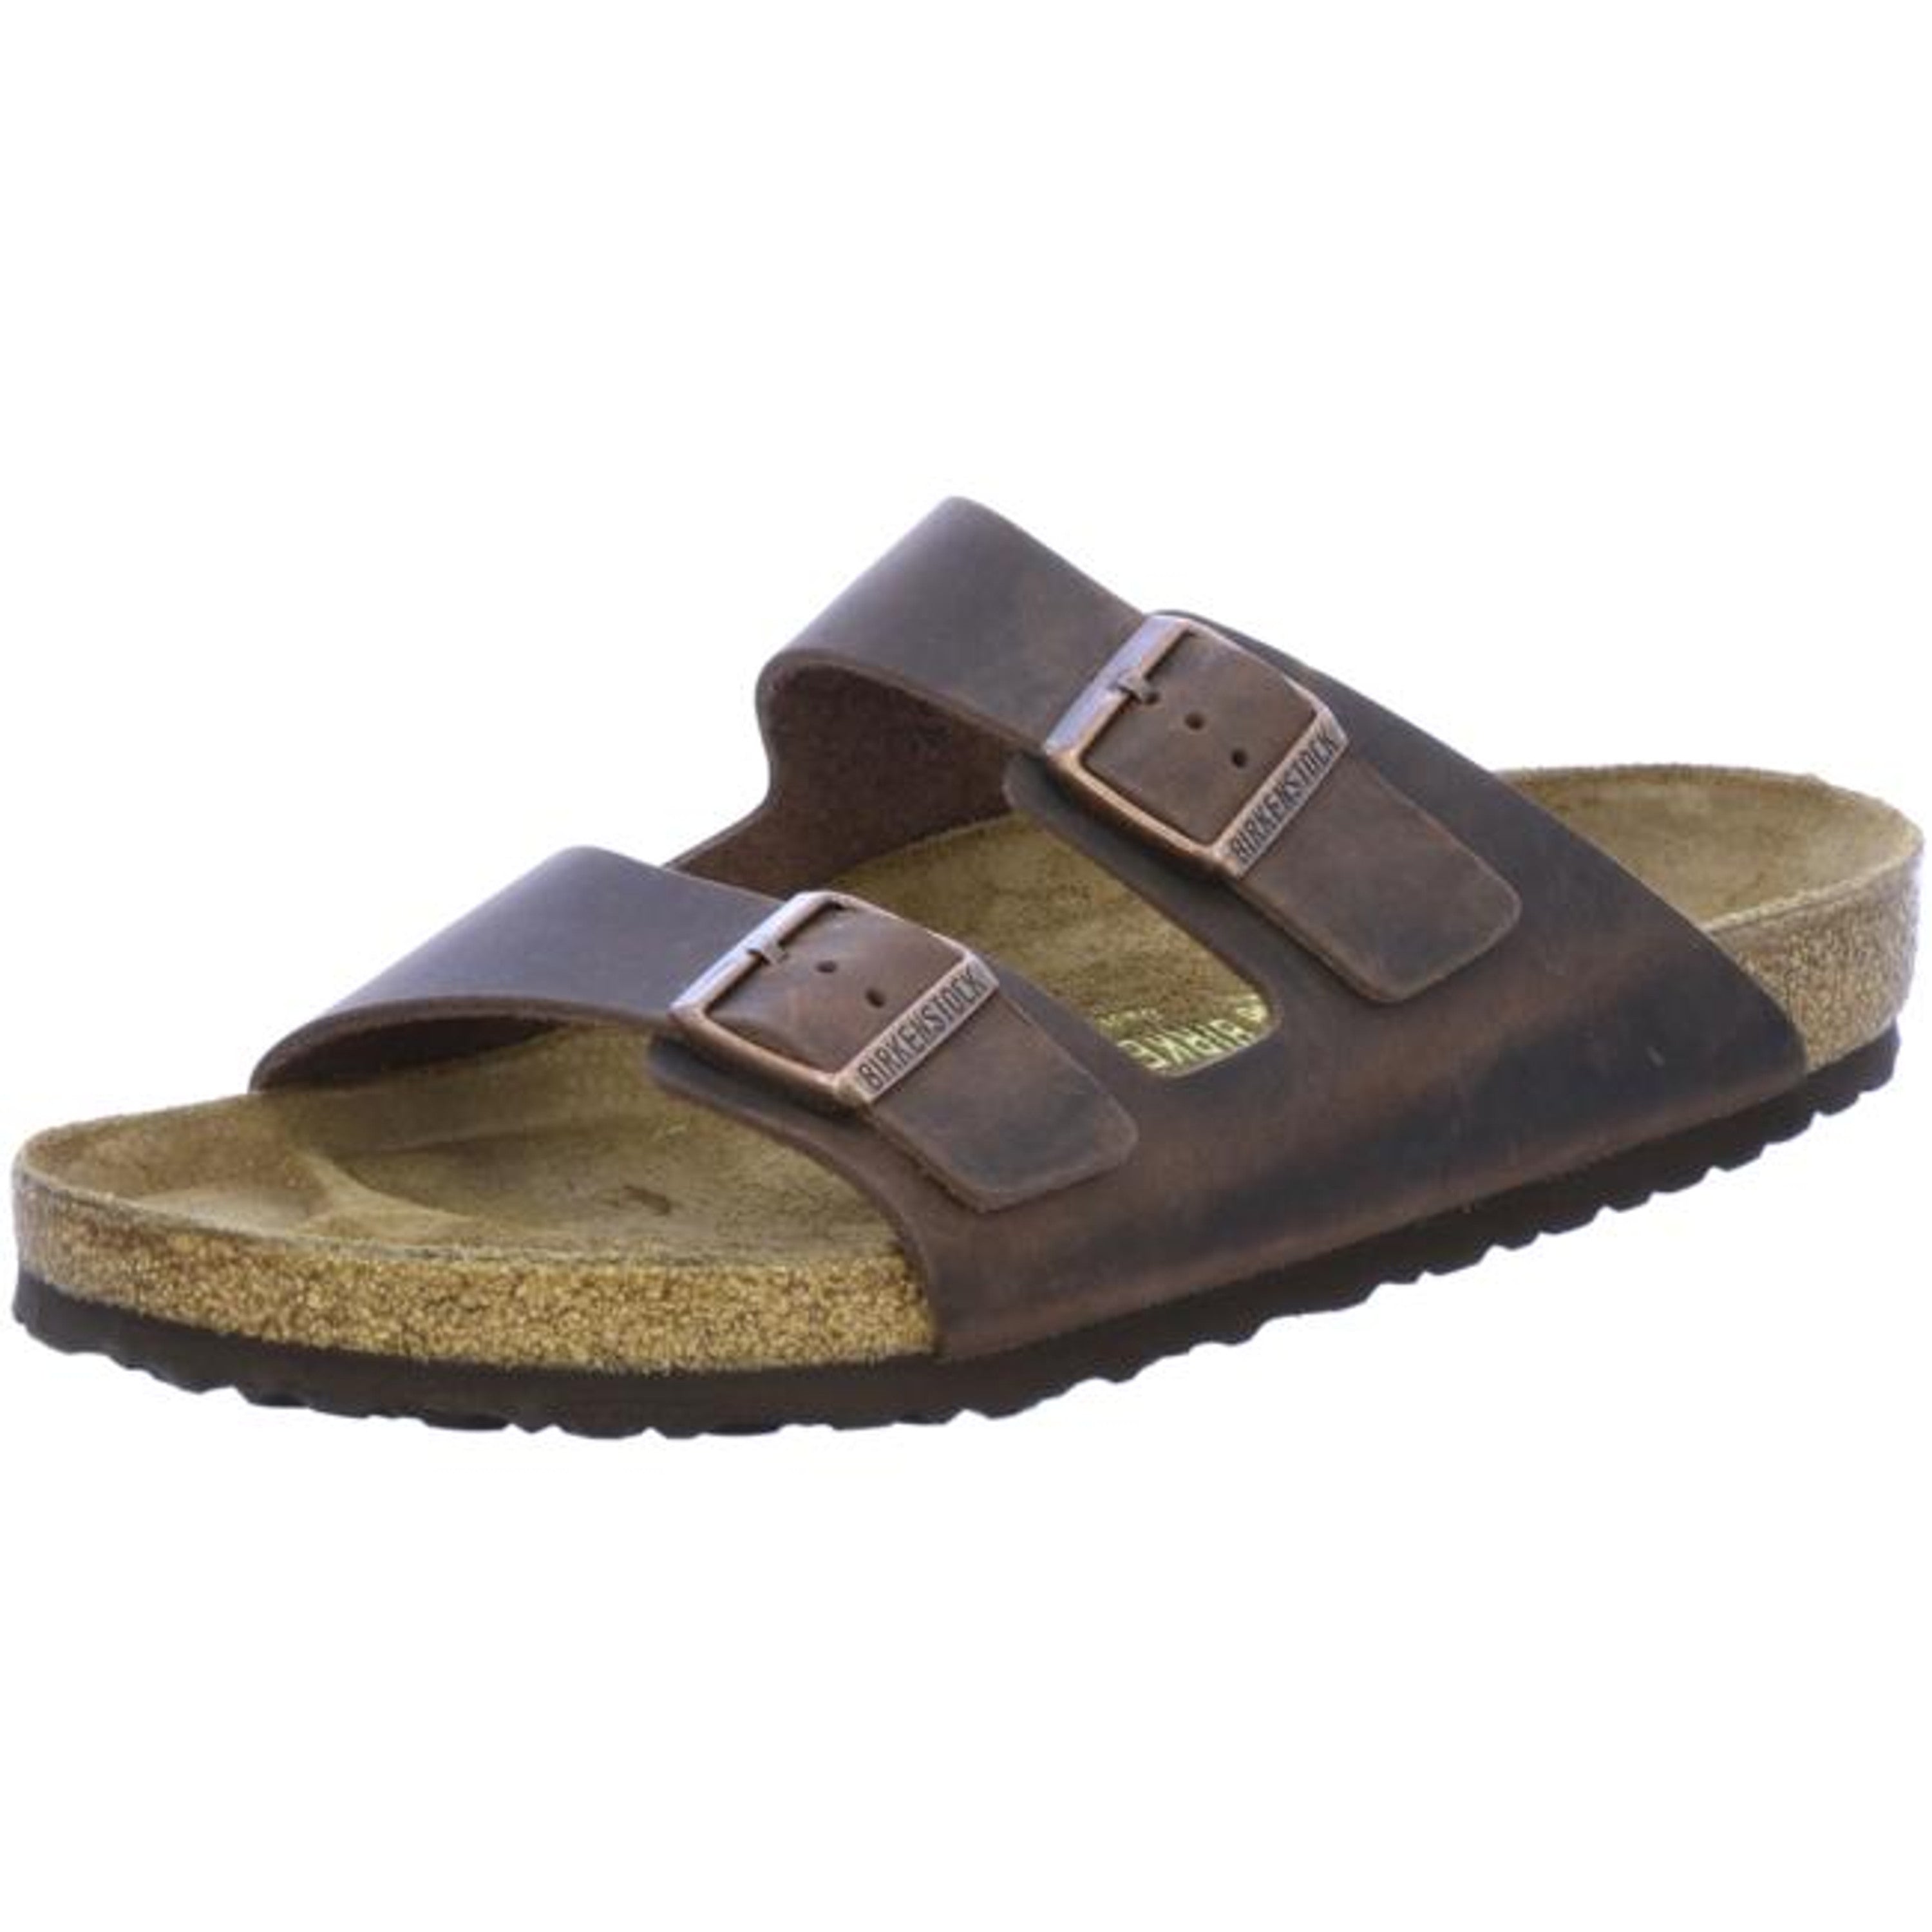 Birkenstock Arizona Slides regular habana Leather Oiled Shoes Buckle Sandals Slippers - Bartel-Shop